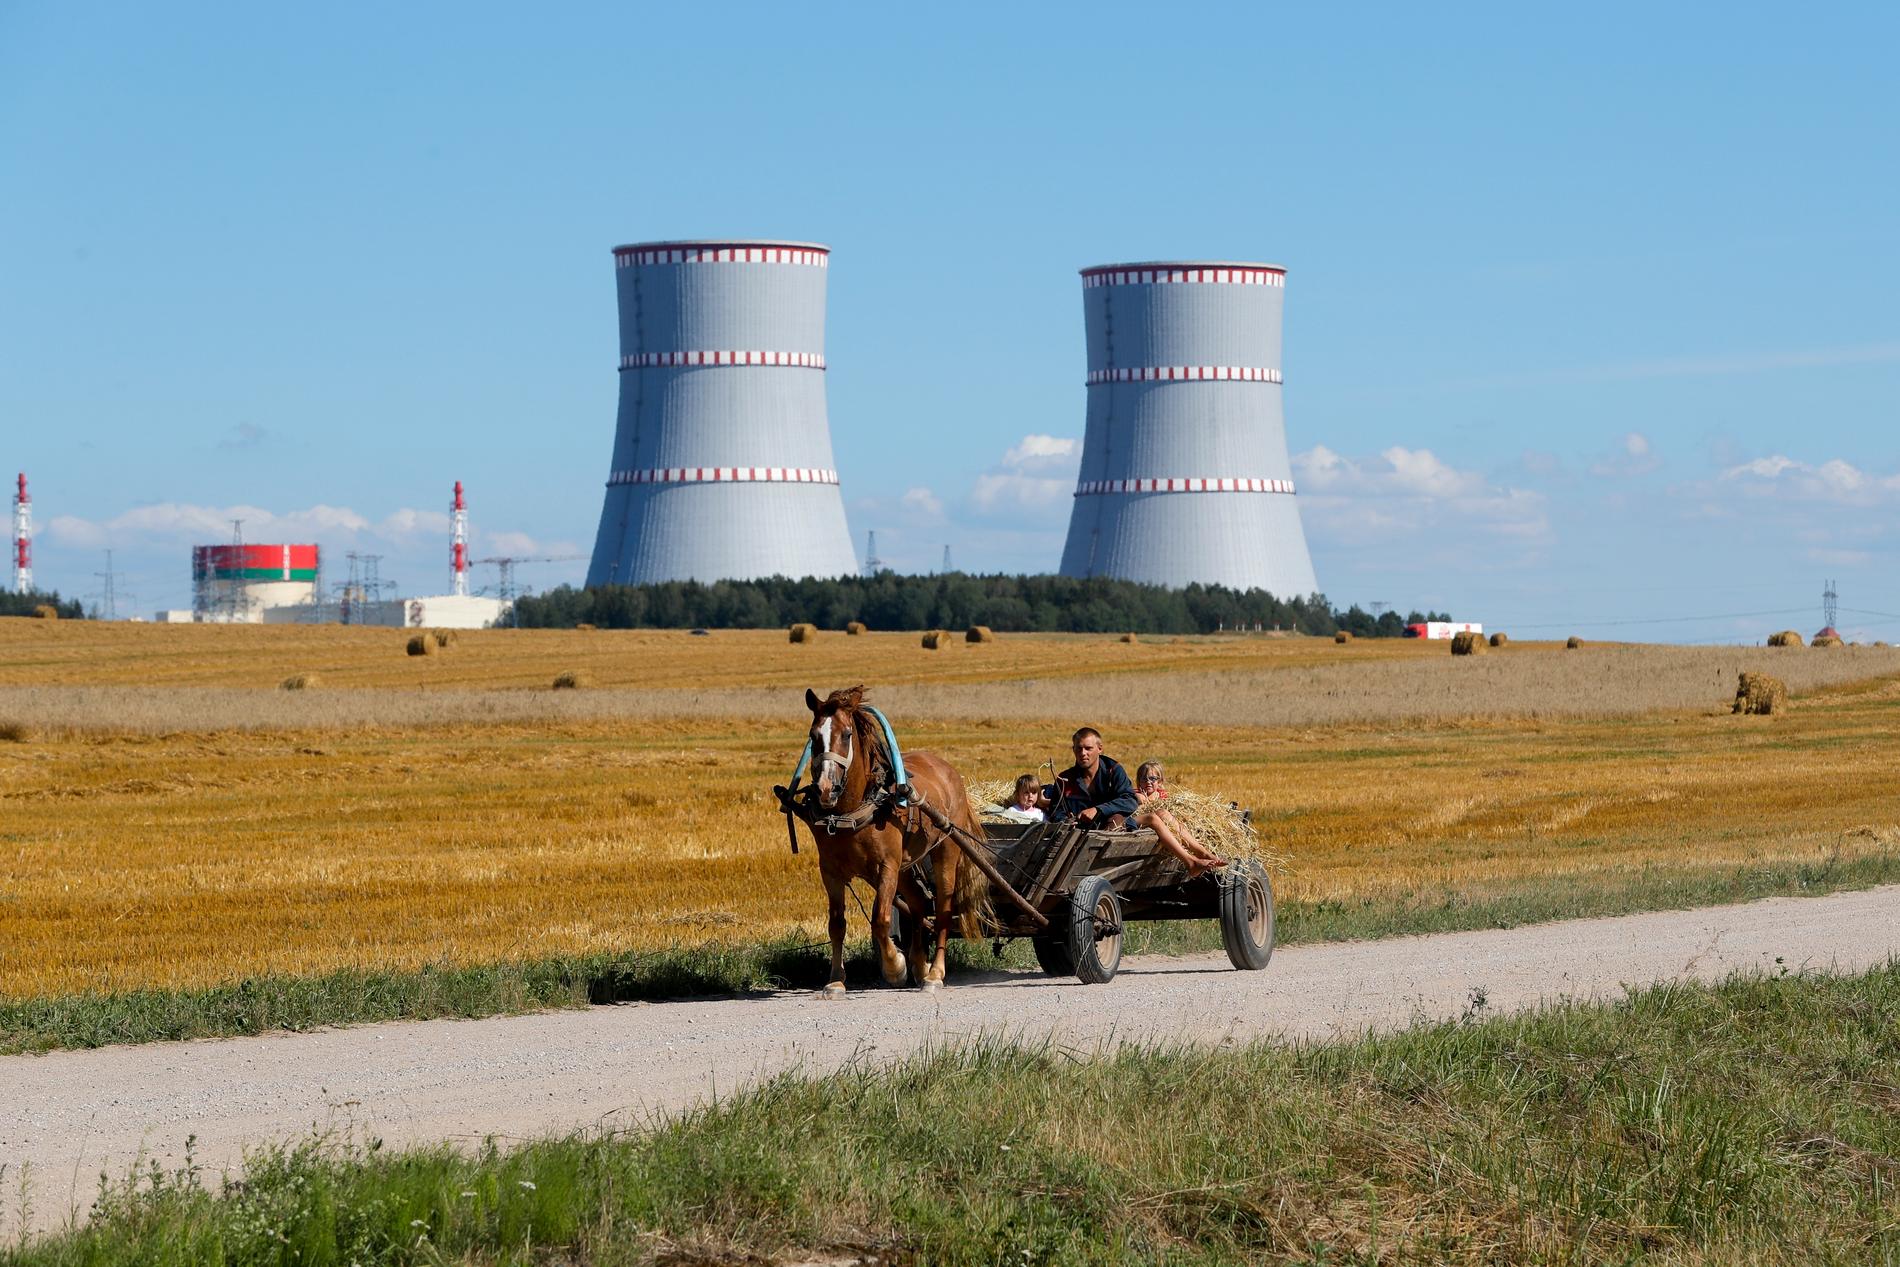 Belarus enda kärnkraftverk, byggt av ryska Rosatom.